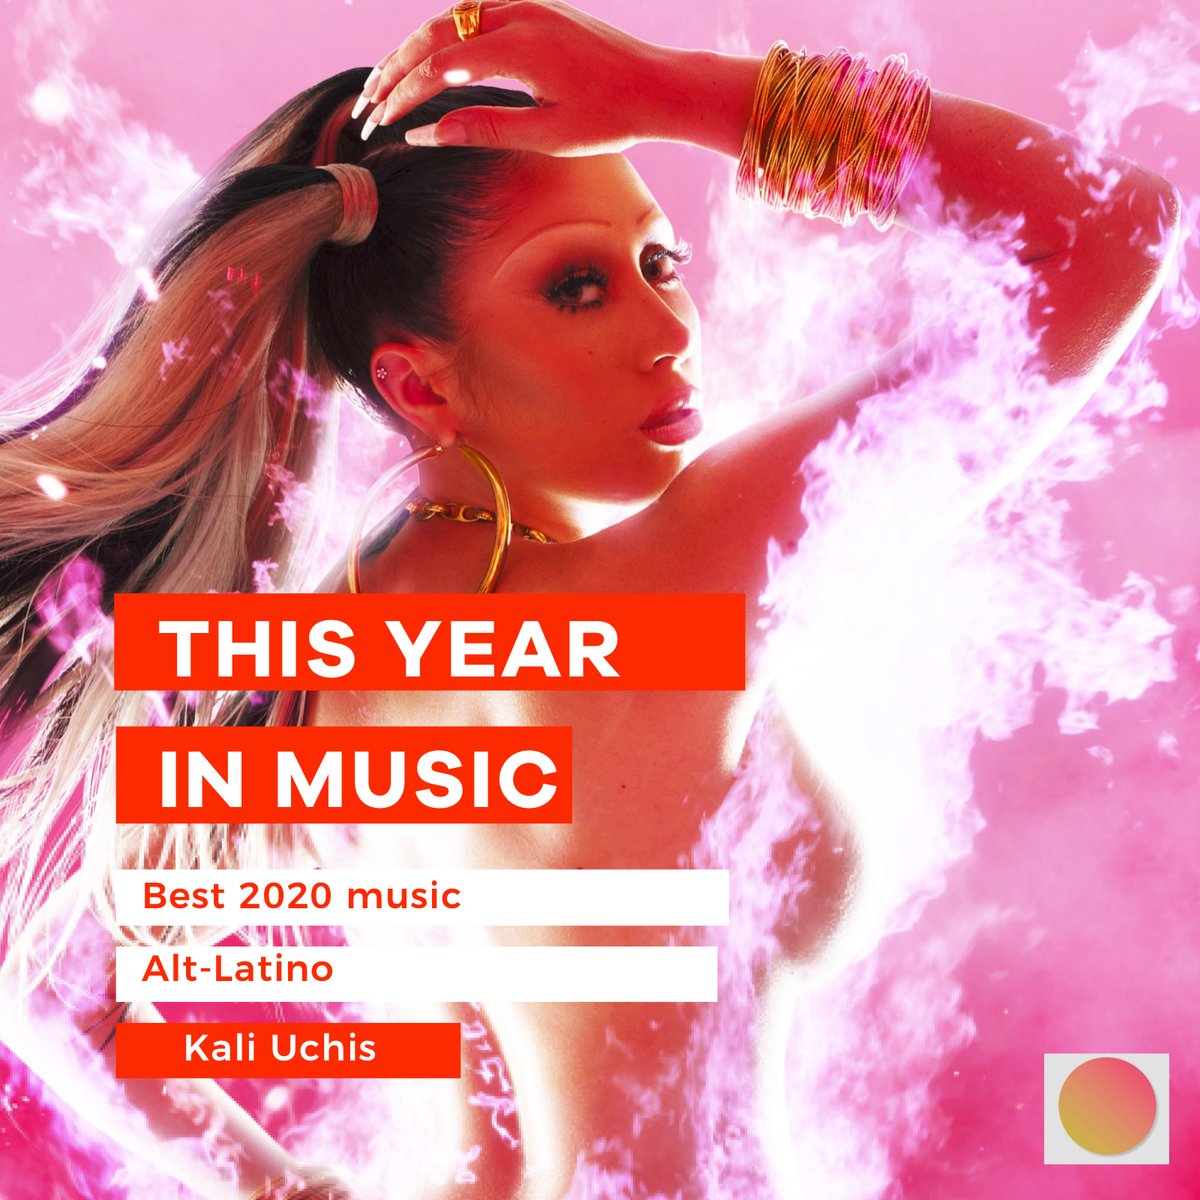 Лучшие сборники музыки 2020 в машину. Kali Uchis обложка. Сборник песен 2020. Песни 2020 года. Песни из 2020.